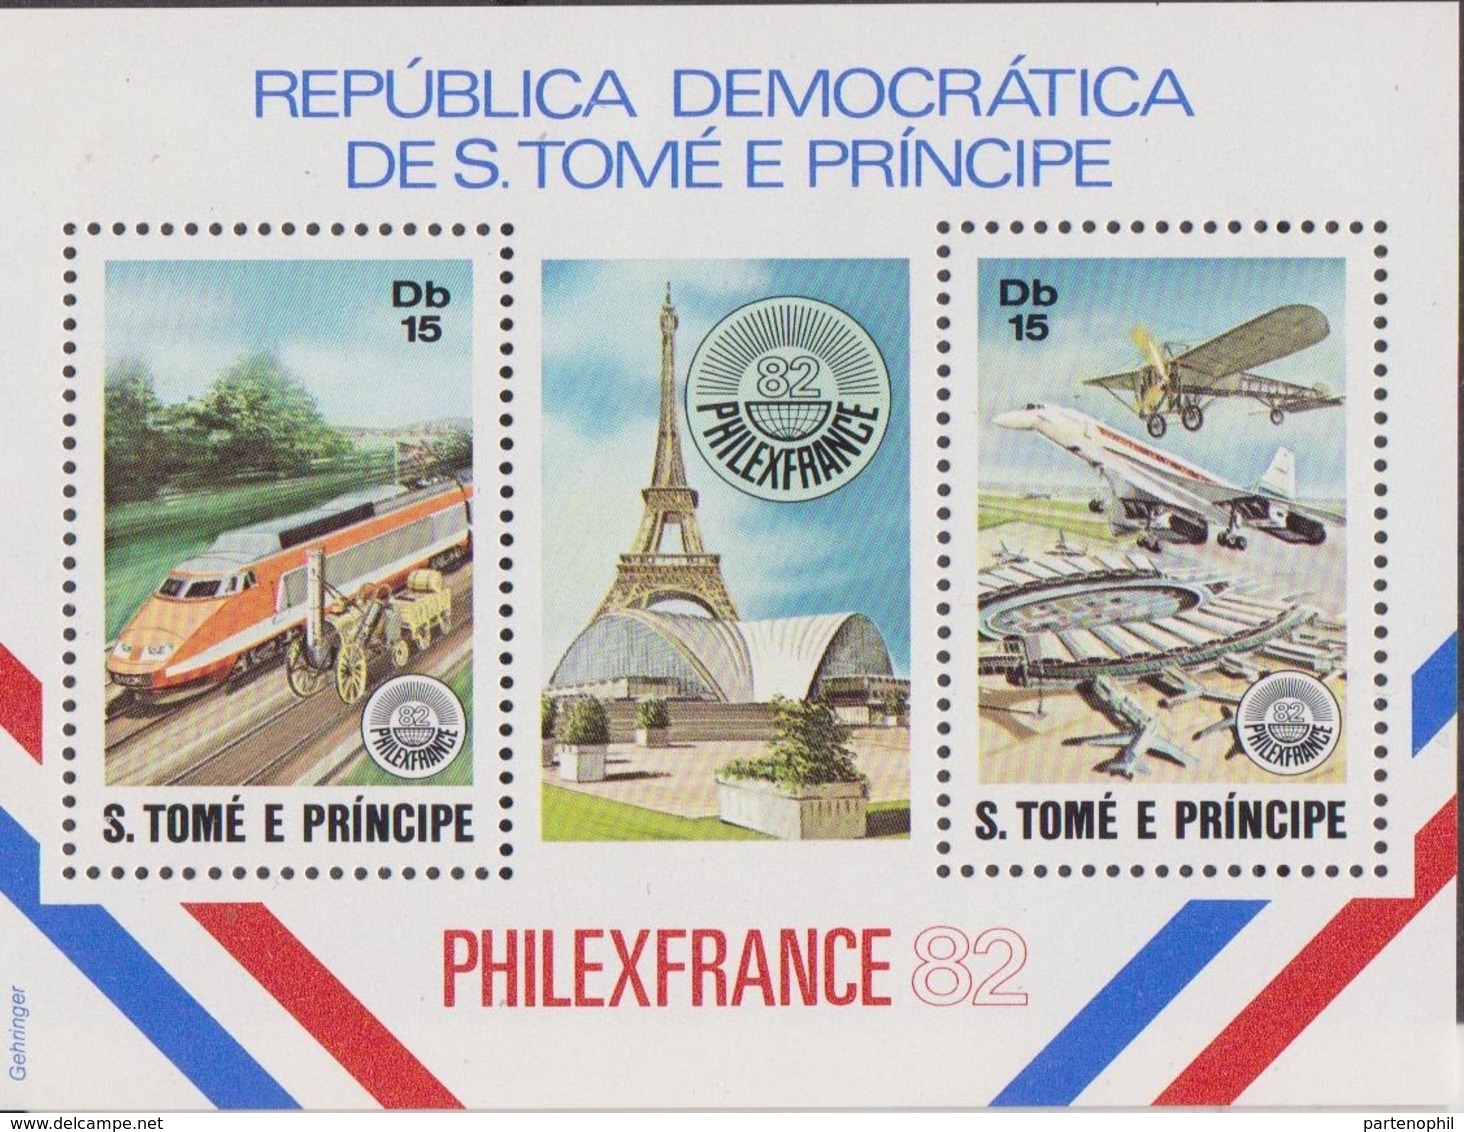 S. Tome E Principe - Philafrance 82' Trein Airplane Set MNH - Exposiciones Filatélicas